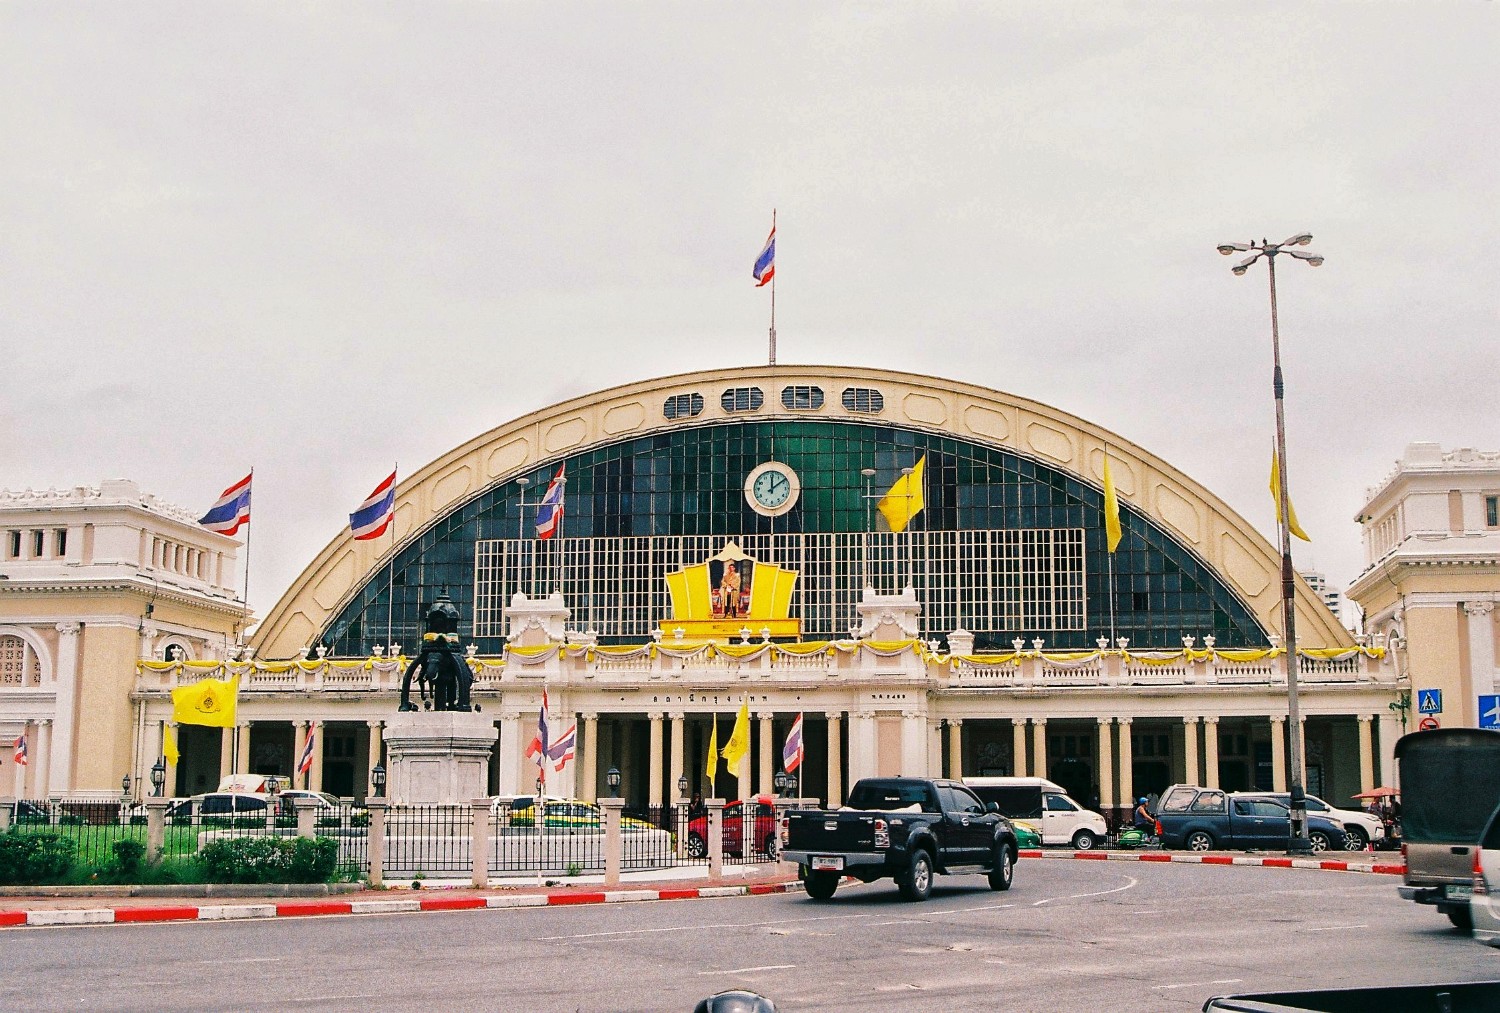 ที่นี่สถานีกรุงเทพ Bangkok Station On Film. - Pantip